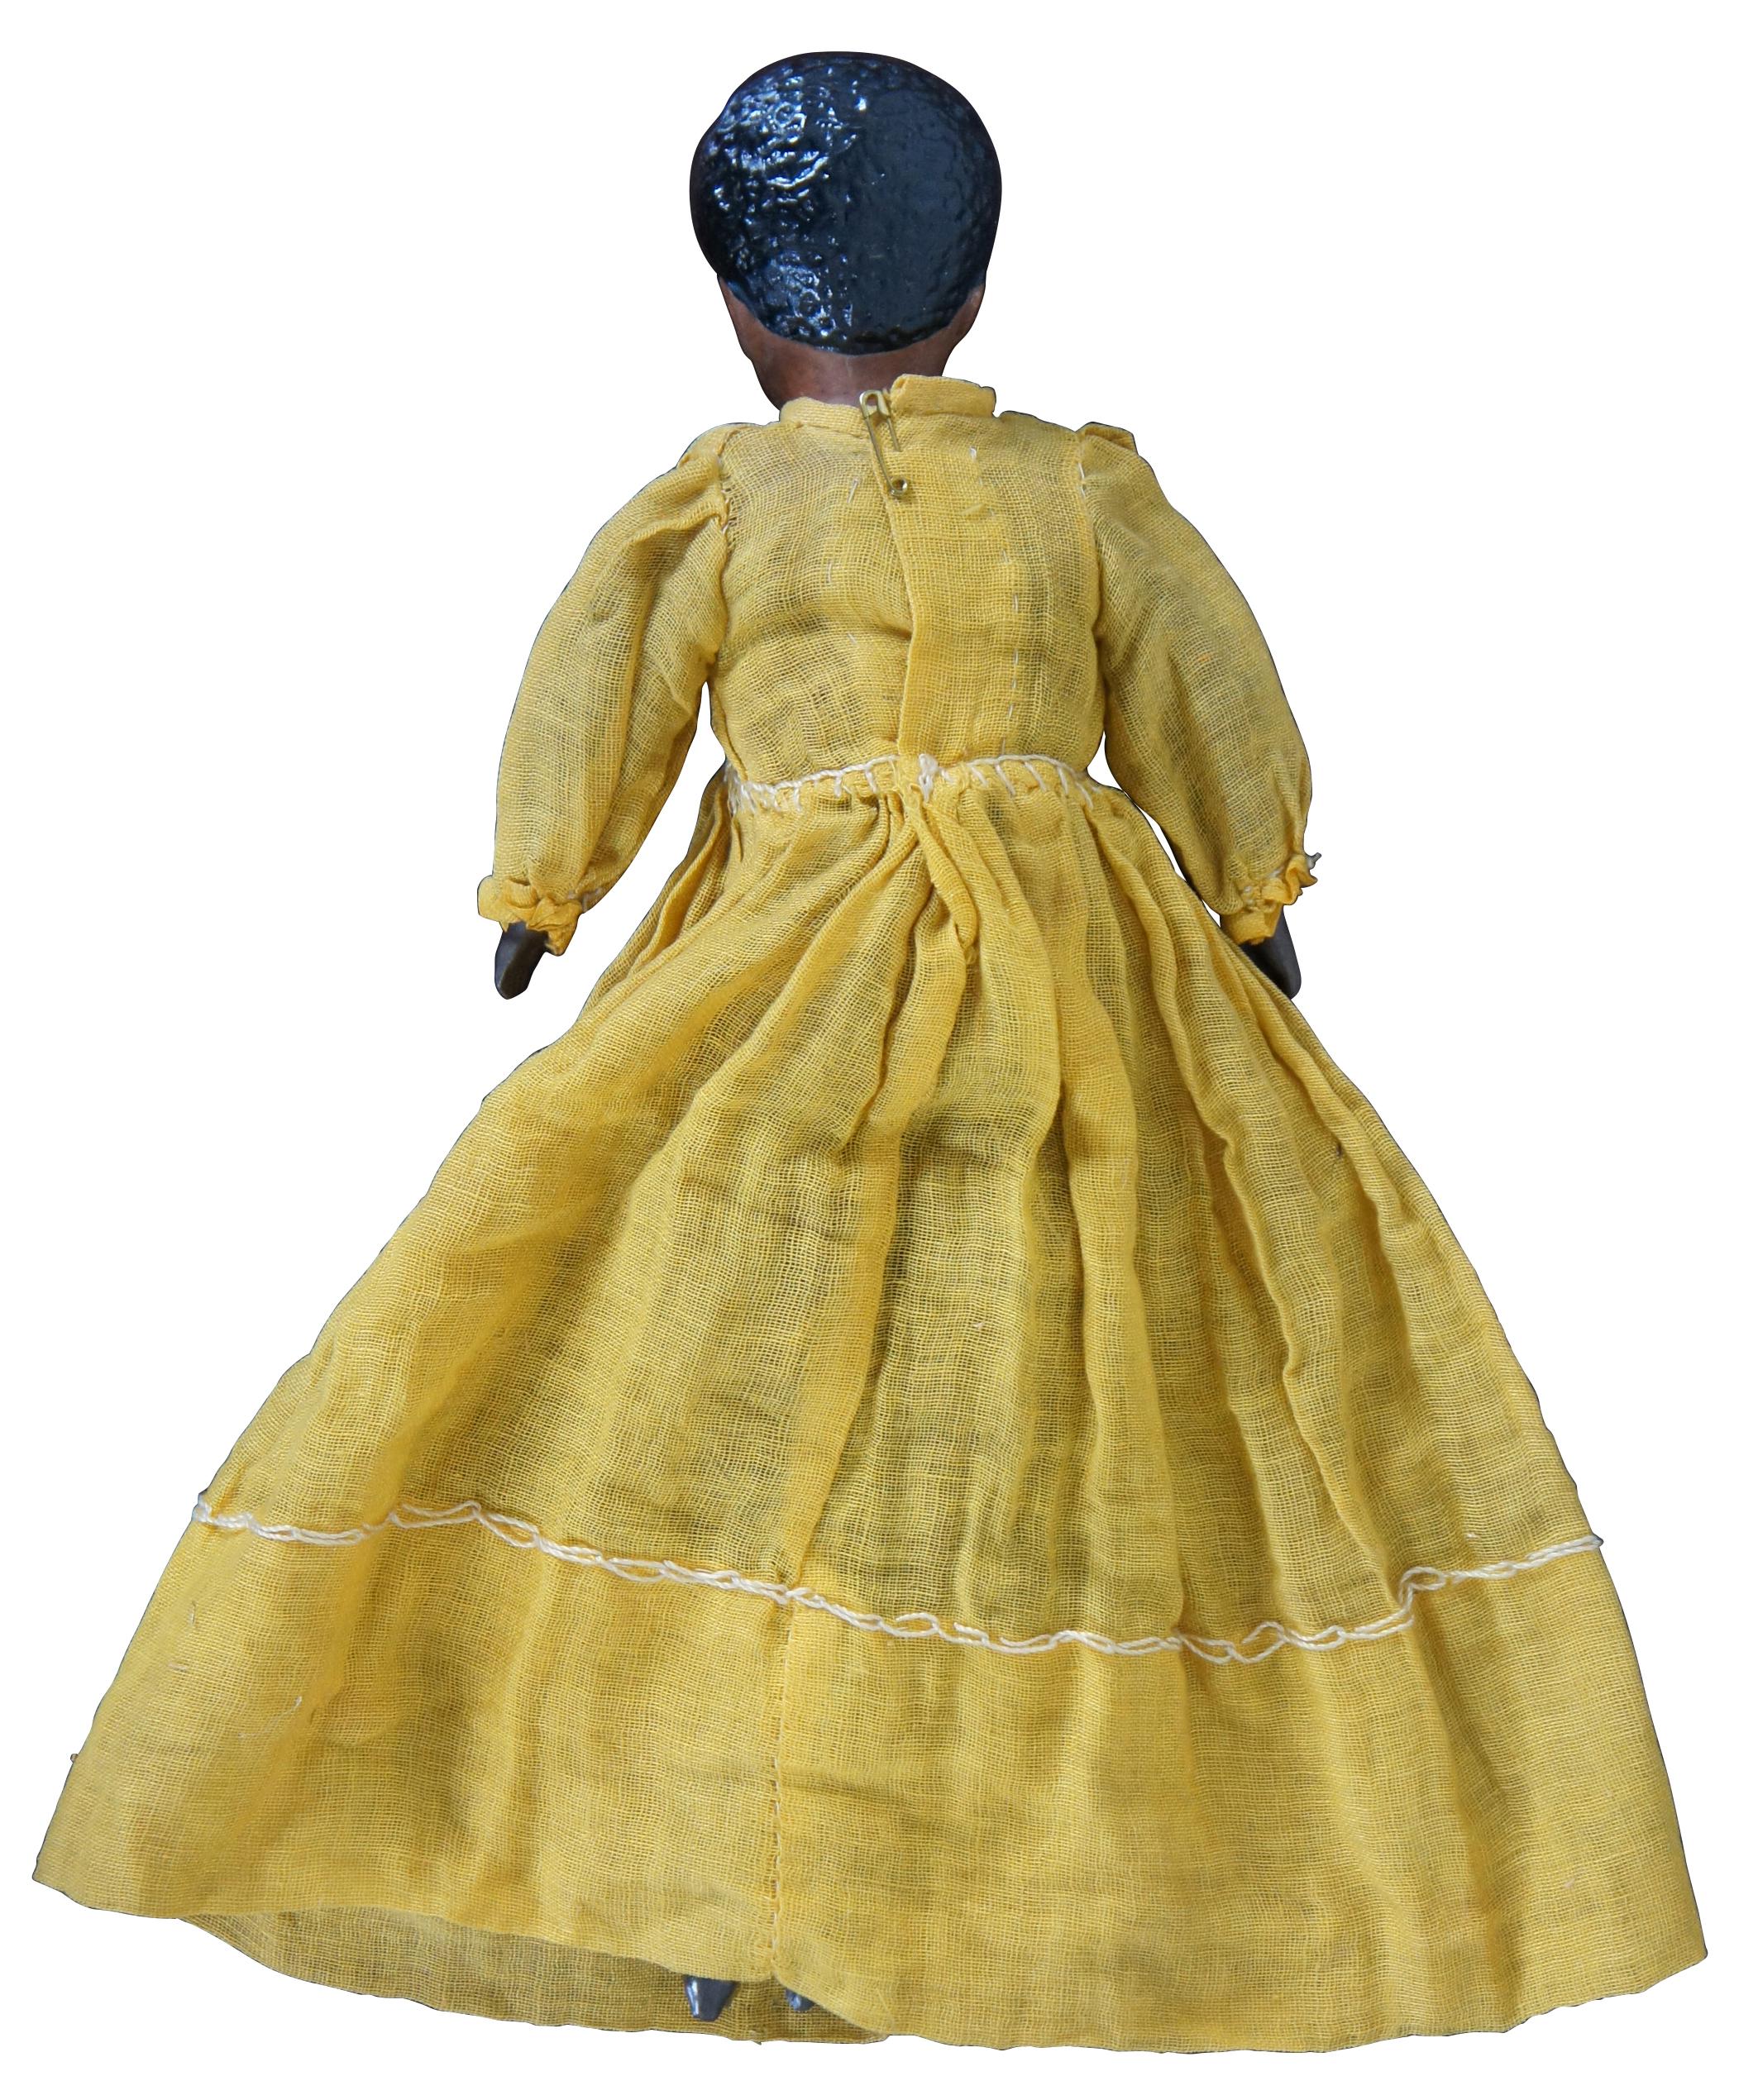 Muñeca afroamericana (¿posiblemente mulata?) del siglo XIX, única en su género, con cabeza y manos de bisque, botas moldeadas y peinado recortado, y cuerpo de tela con vestido amarillo.